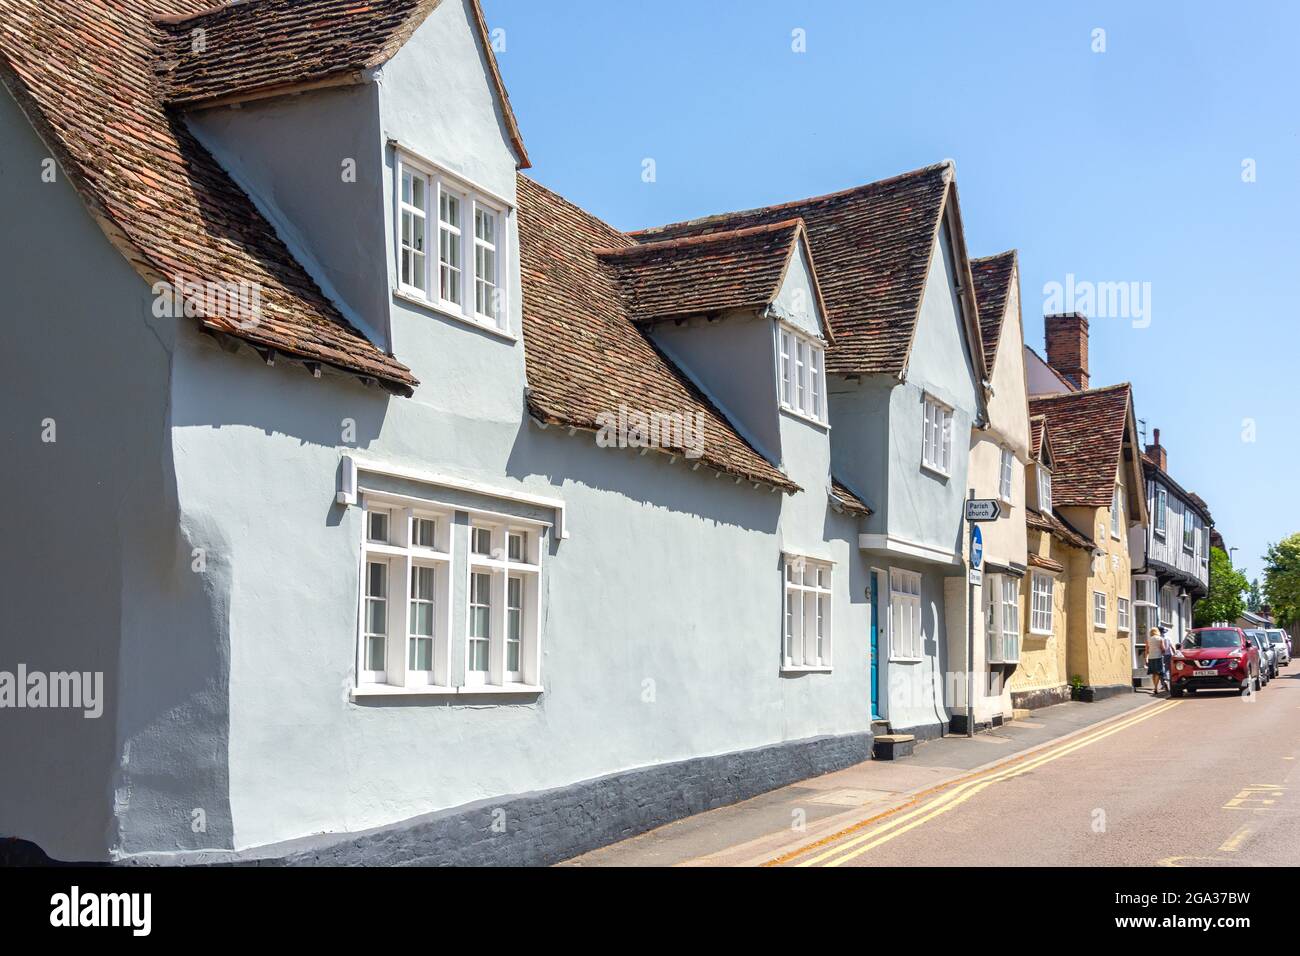 Maisons d'époque, High Street, Linton, Cambridgeshire, Angleterre, Royaume-Uni Banque D'Images